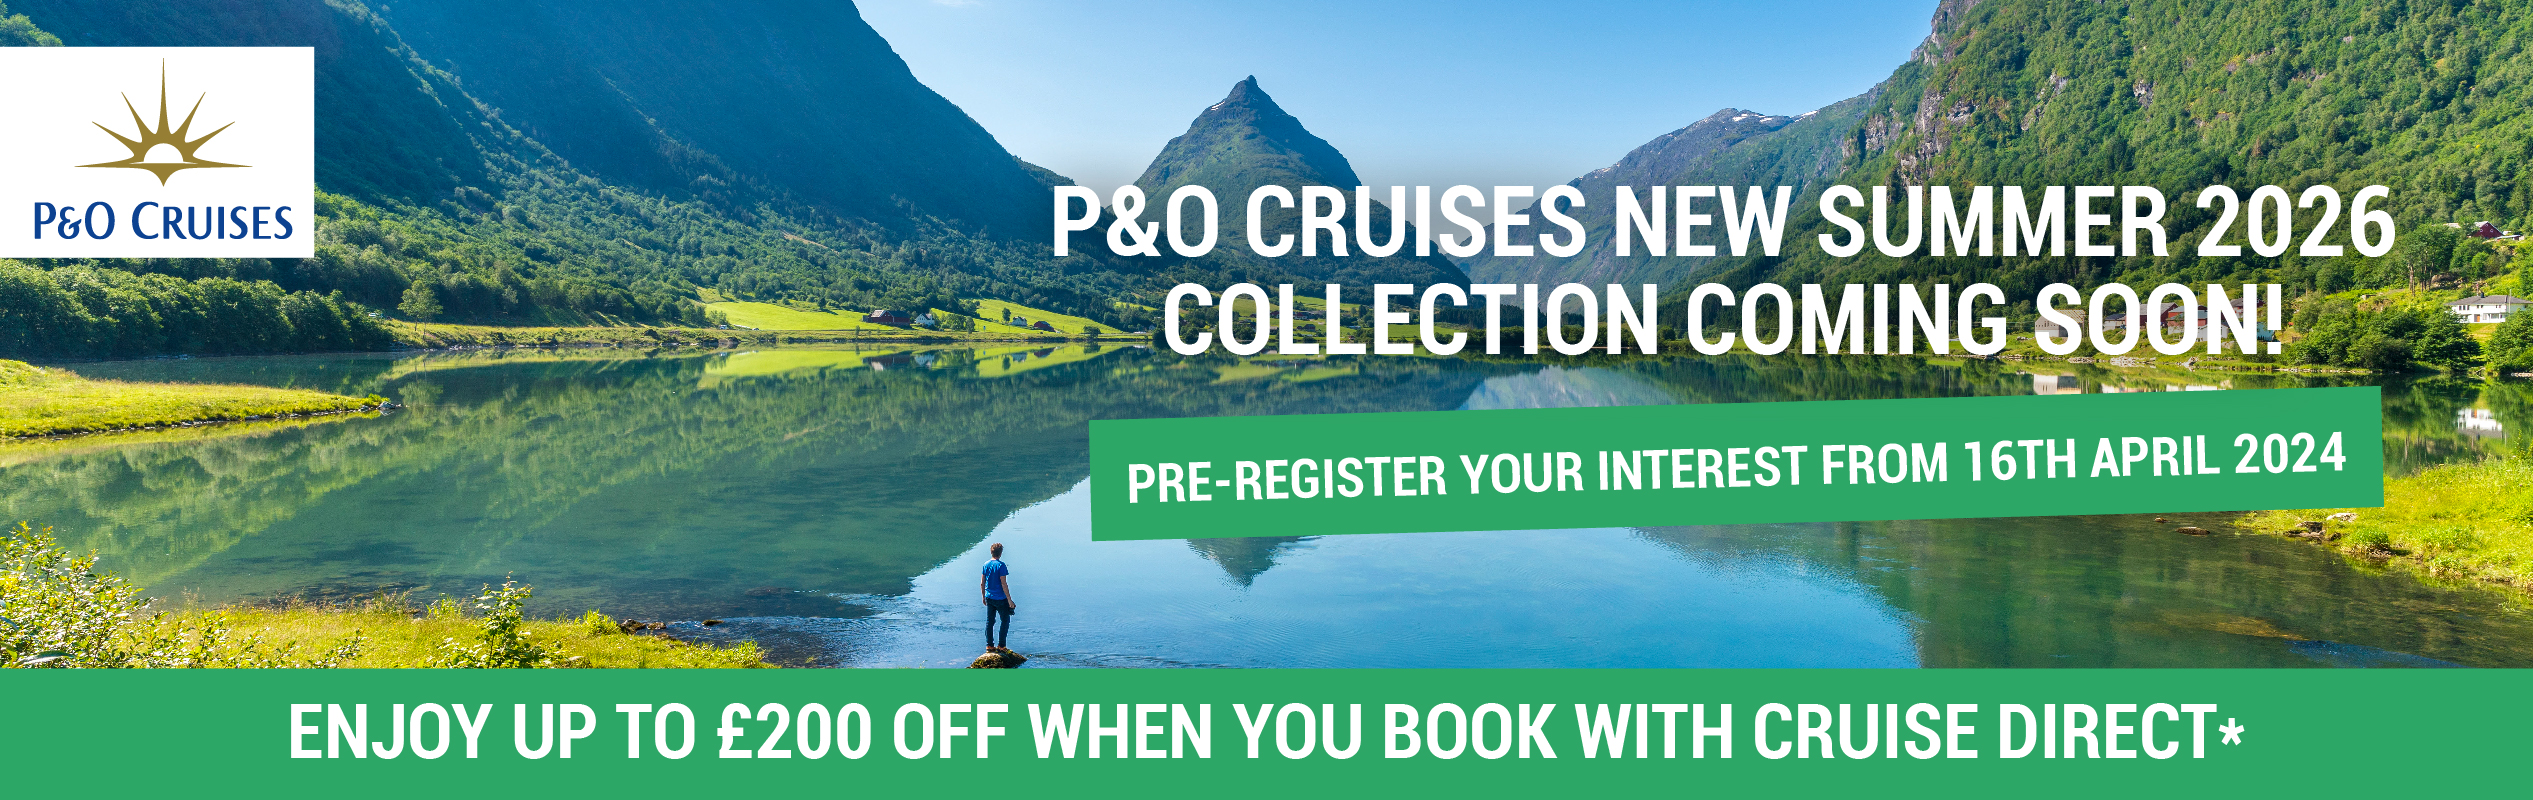 P&O Cruises Campaign